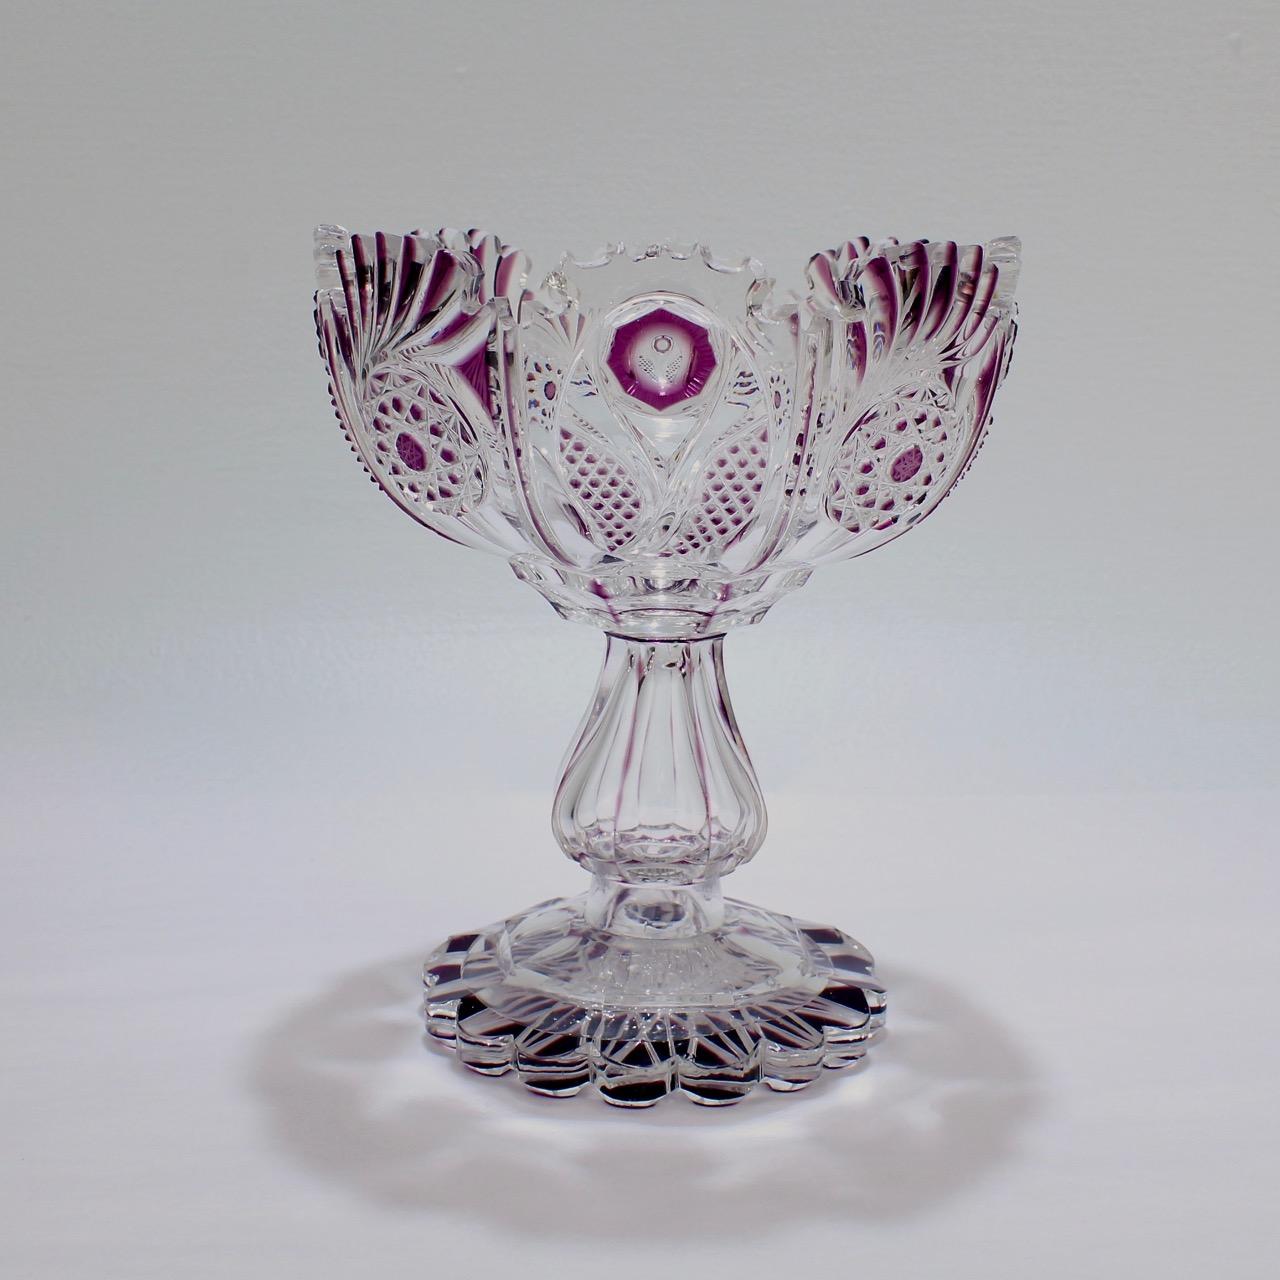 Eine gute Bohemain Glasschüssel mit Fuß oder Kompott.

Wahrscheinlich von der Glashütte Graf Harrach hergestellt. 

Mit einem violetten Überfang (die erste Glasschicht) und umfangreichen Schliffen, auch am Sockel.

Ein schönes Beispiel für